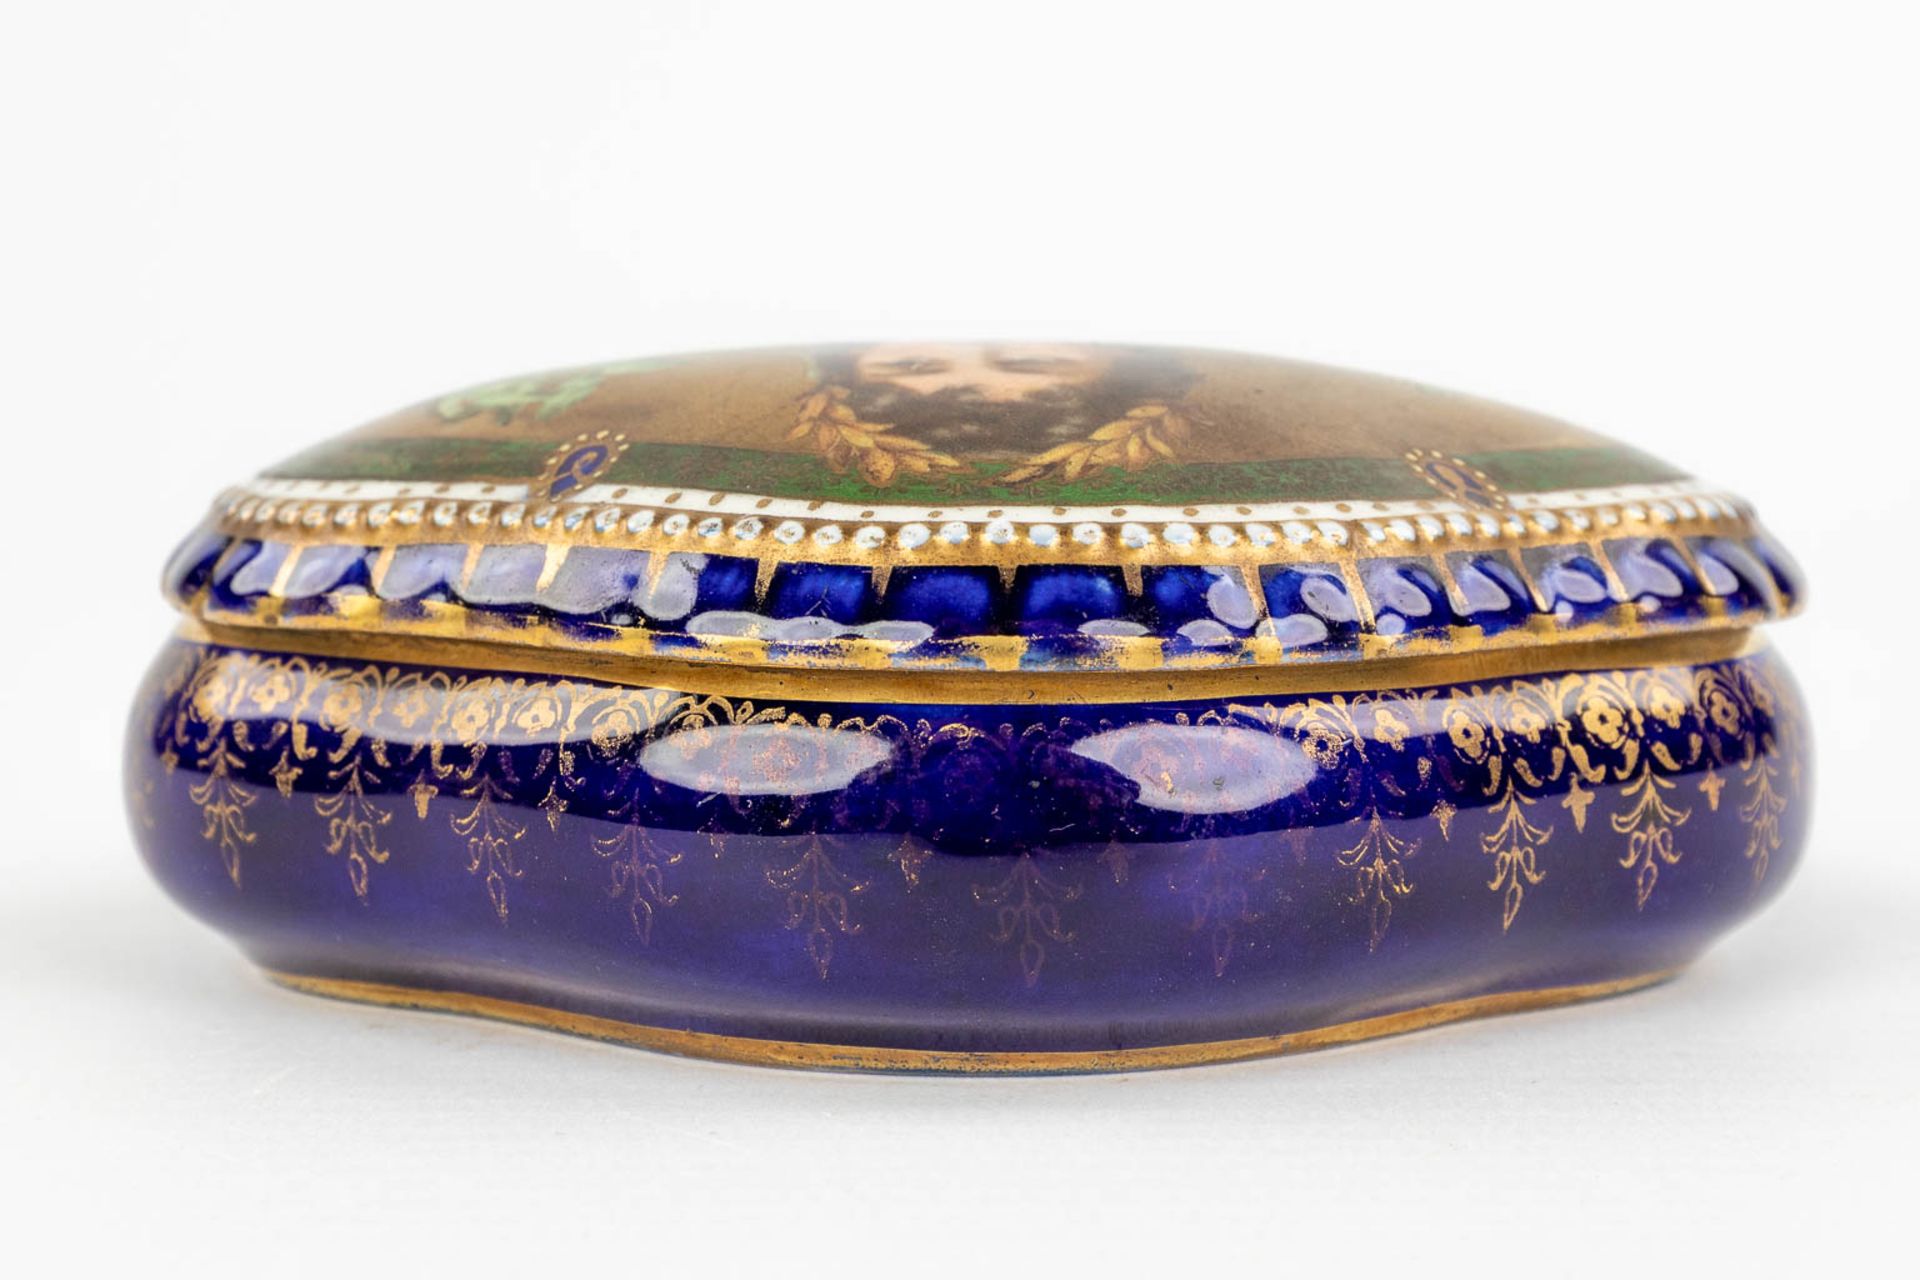 Sitzendorf & 'Royal Vienna' a set of 2 porcelain items. (L:12 x W:20 x H:23 cm) - Image 15 of 22